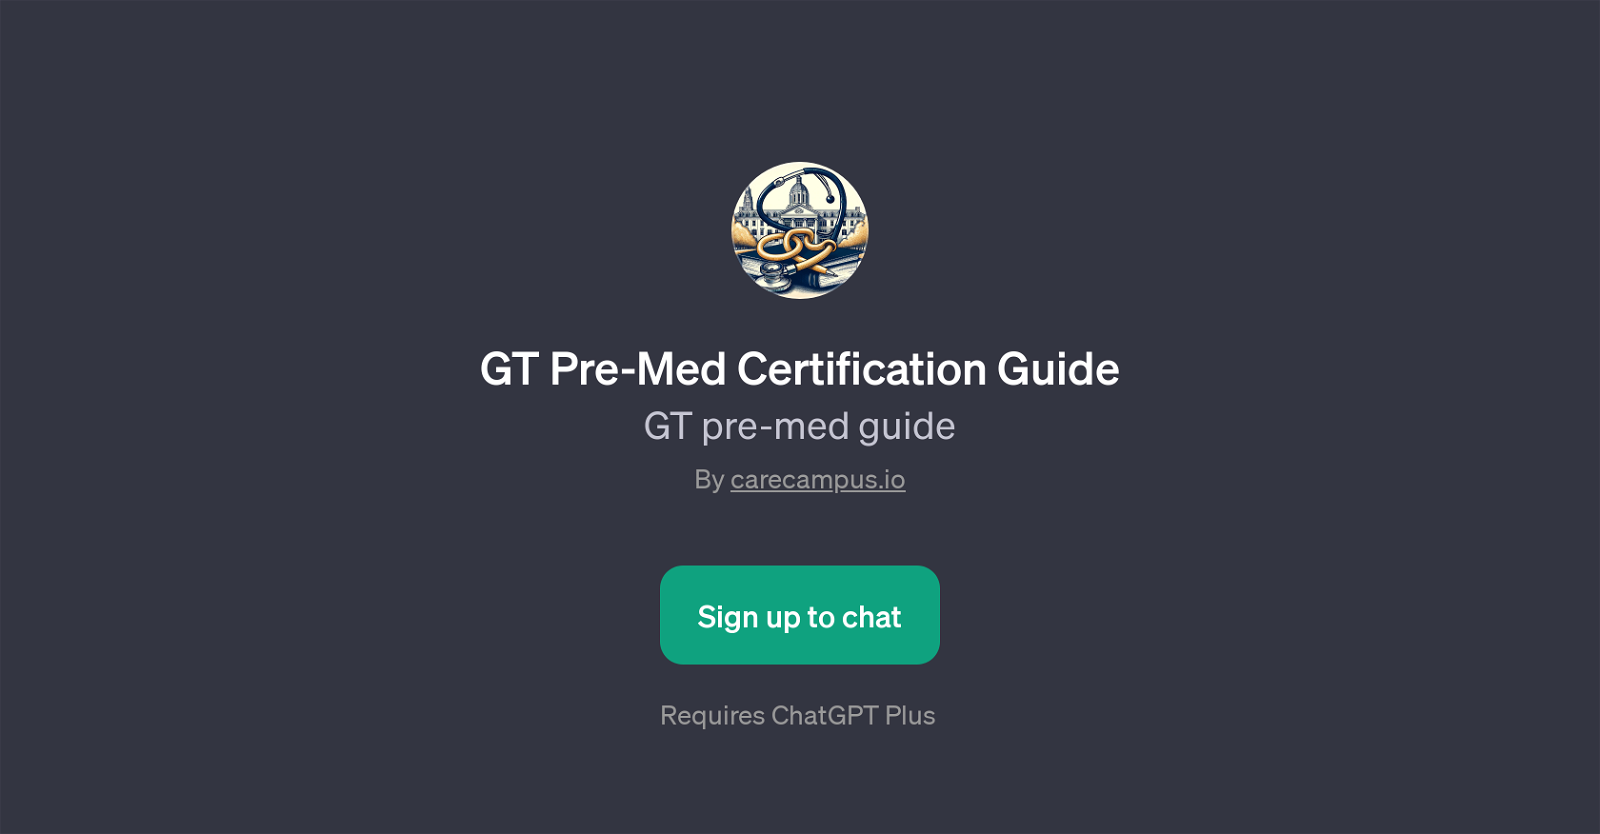 GT Pre-Med Certification Guide website